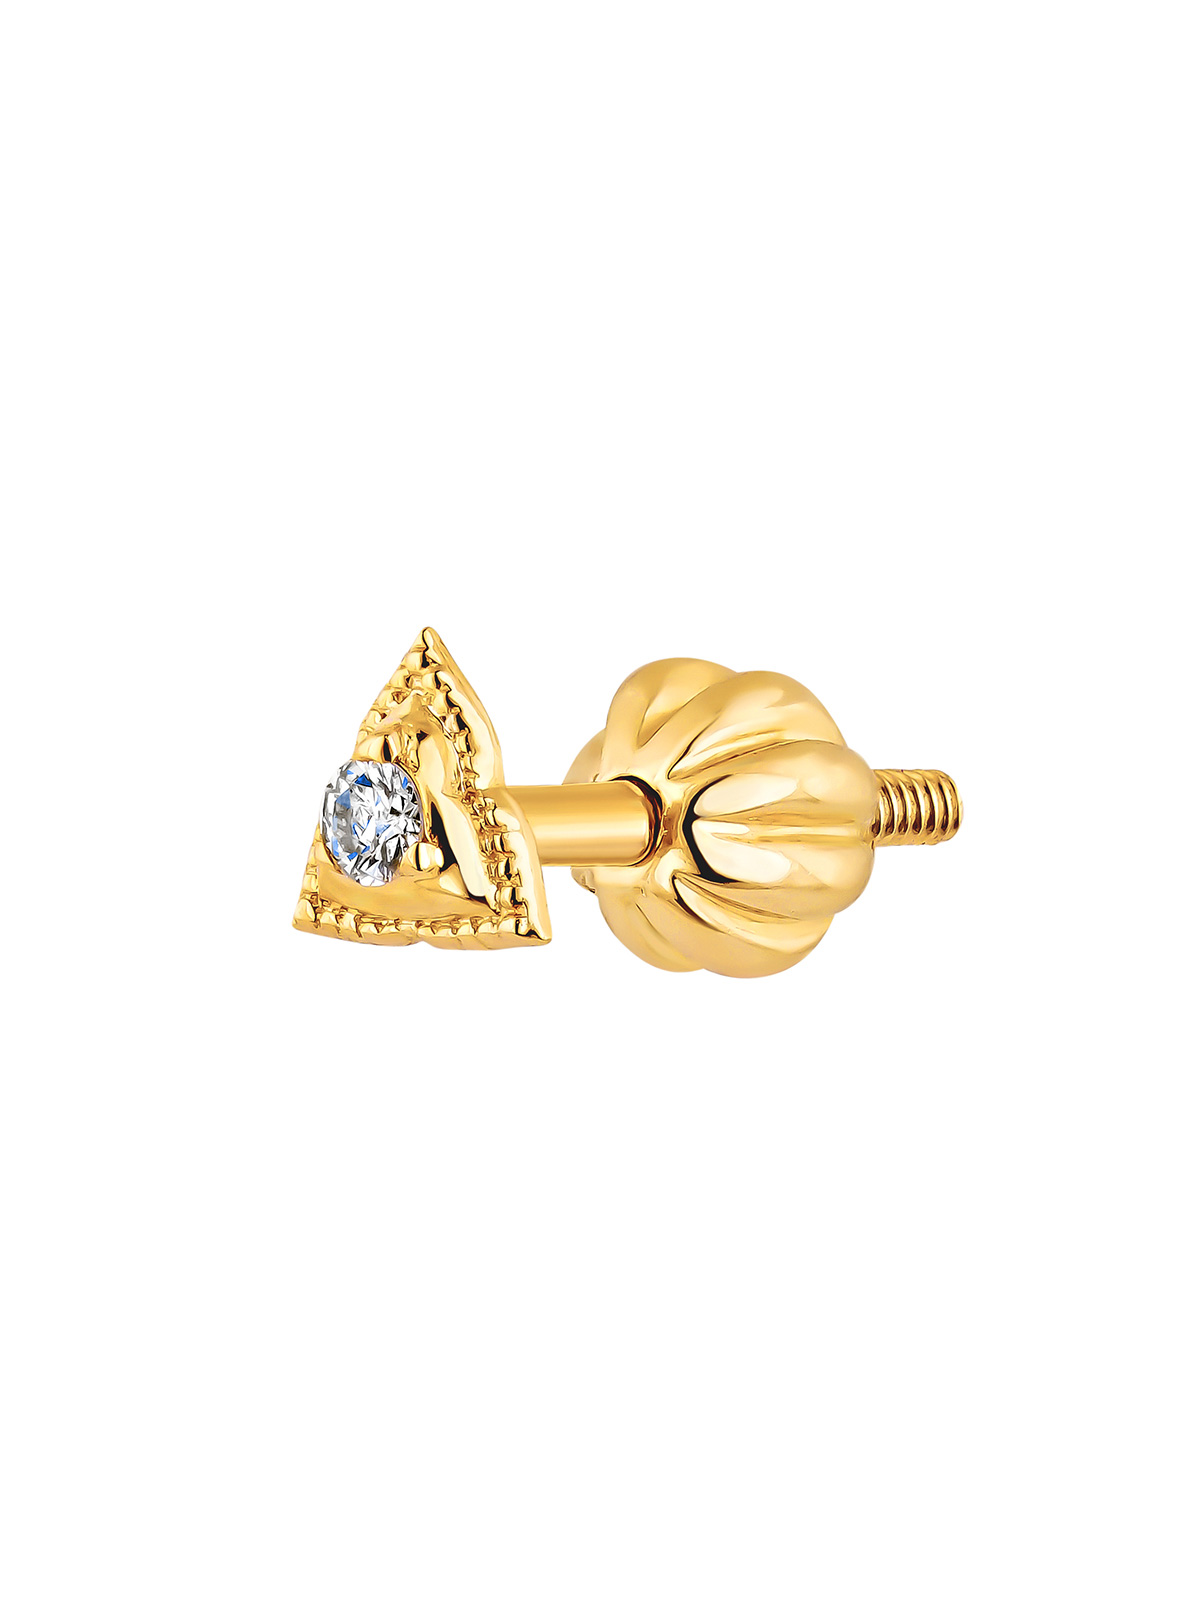 Boucle d'oreille individuelle en or jaune 9K avec diamant et forme de triangle.